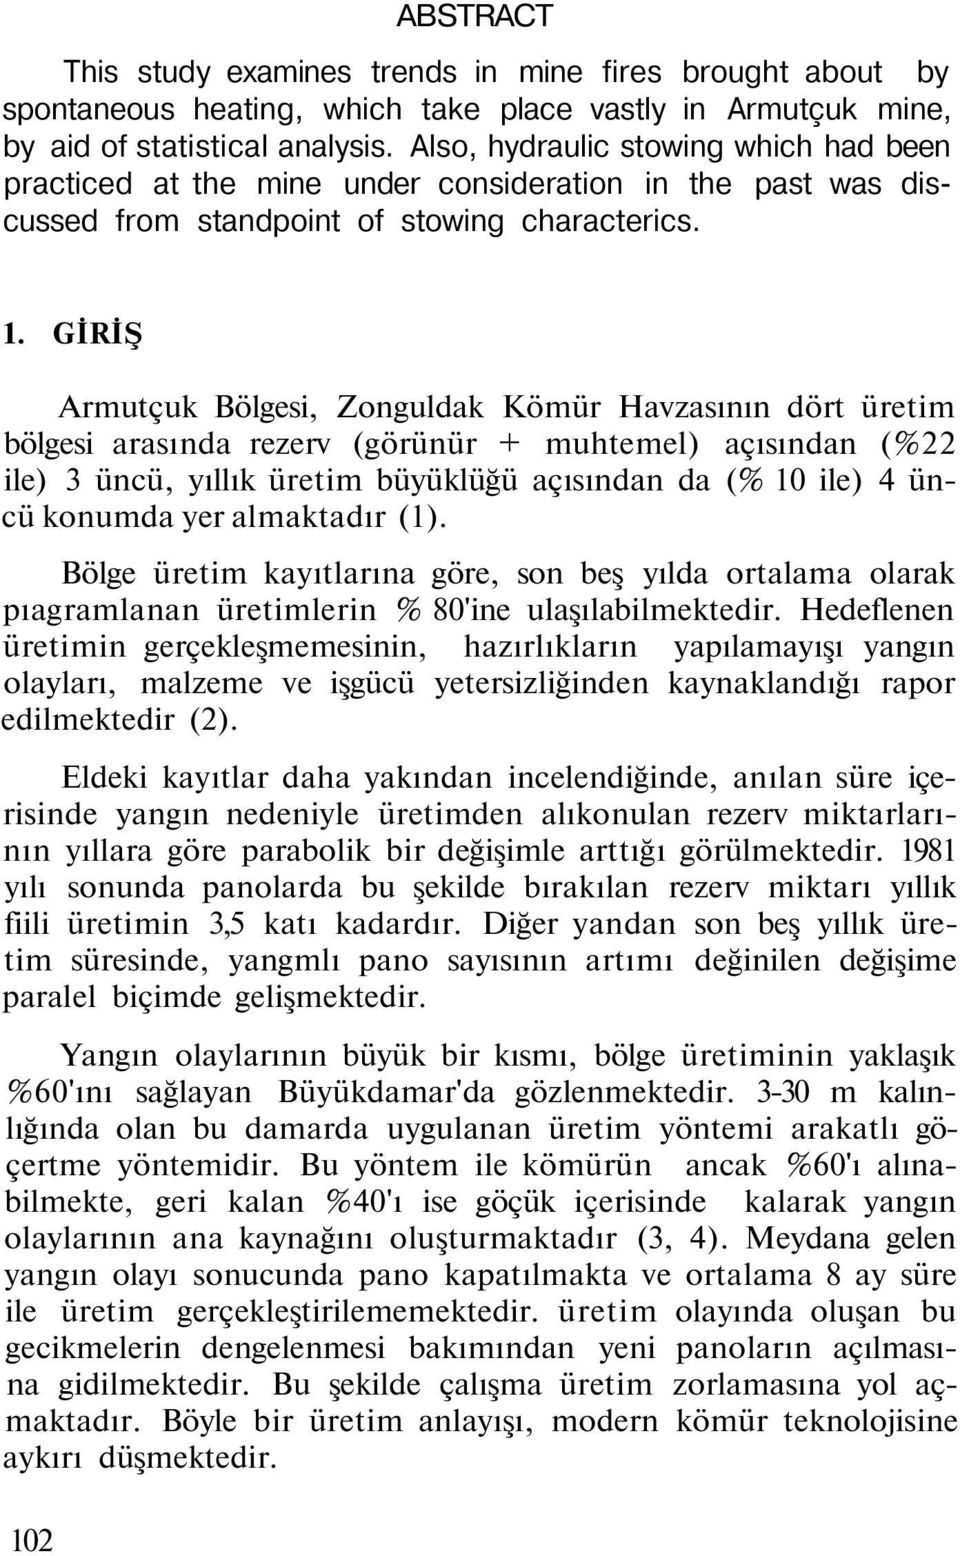 GİRİŞ Armutçuk Bölgesi, Zonguldak Kömür Havzasının dört üretim bölgesi arasında rezerv (görünür + muhtemel) açısından (%22 ile) 3 üncü, yıllık üretim büyüklüğü açısından da (% 10 ile) 4 üncü konumda